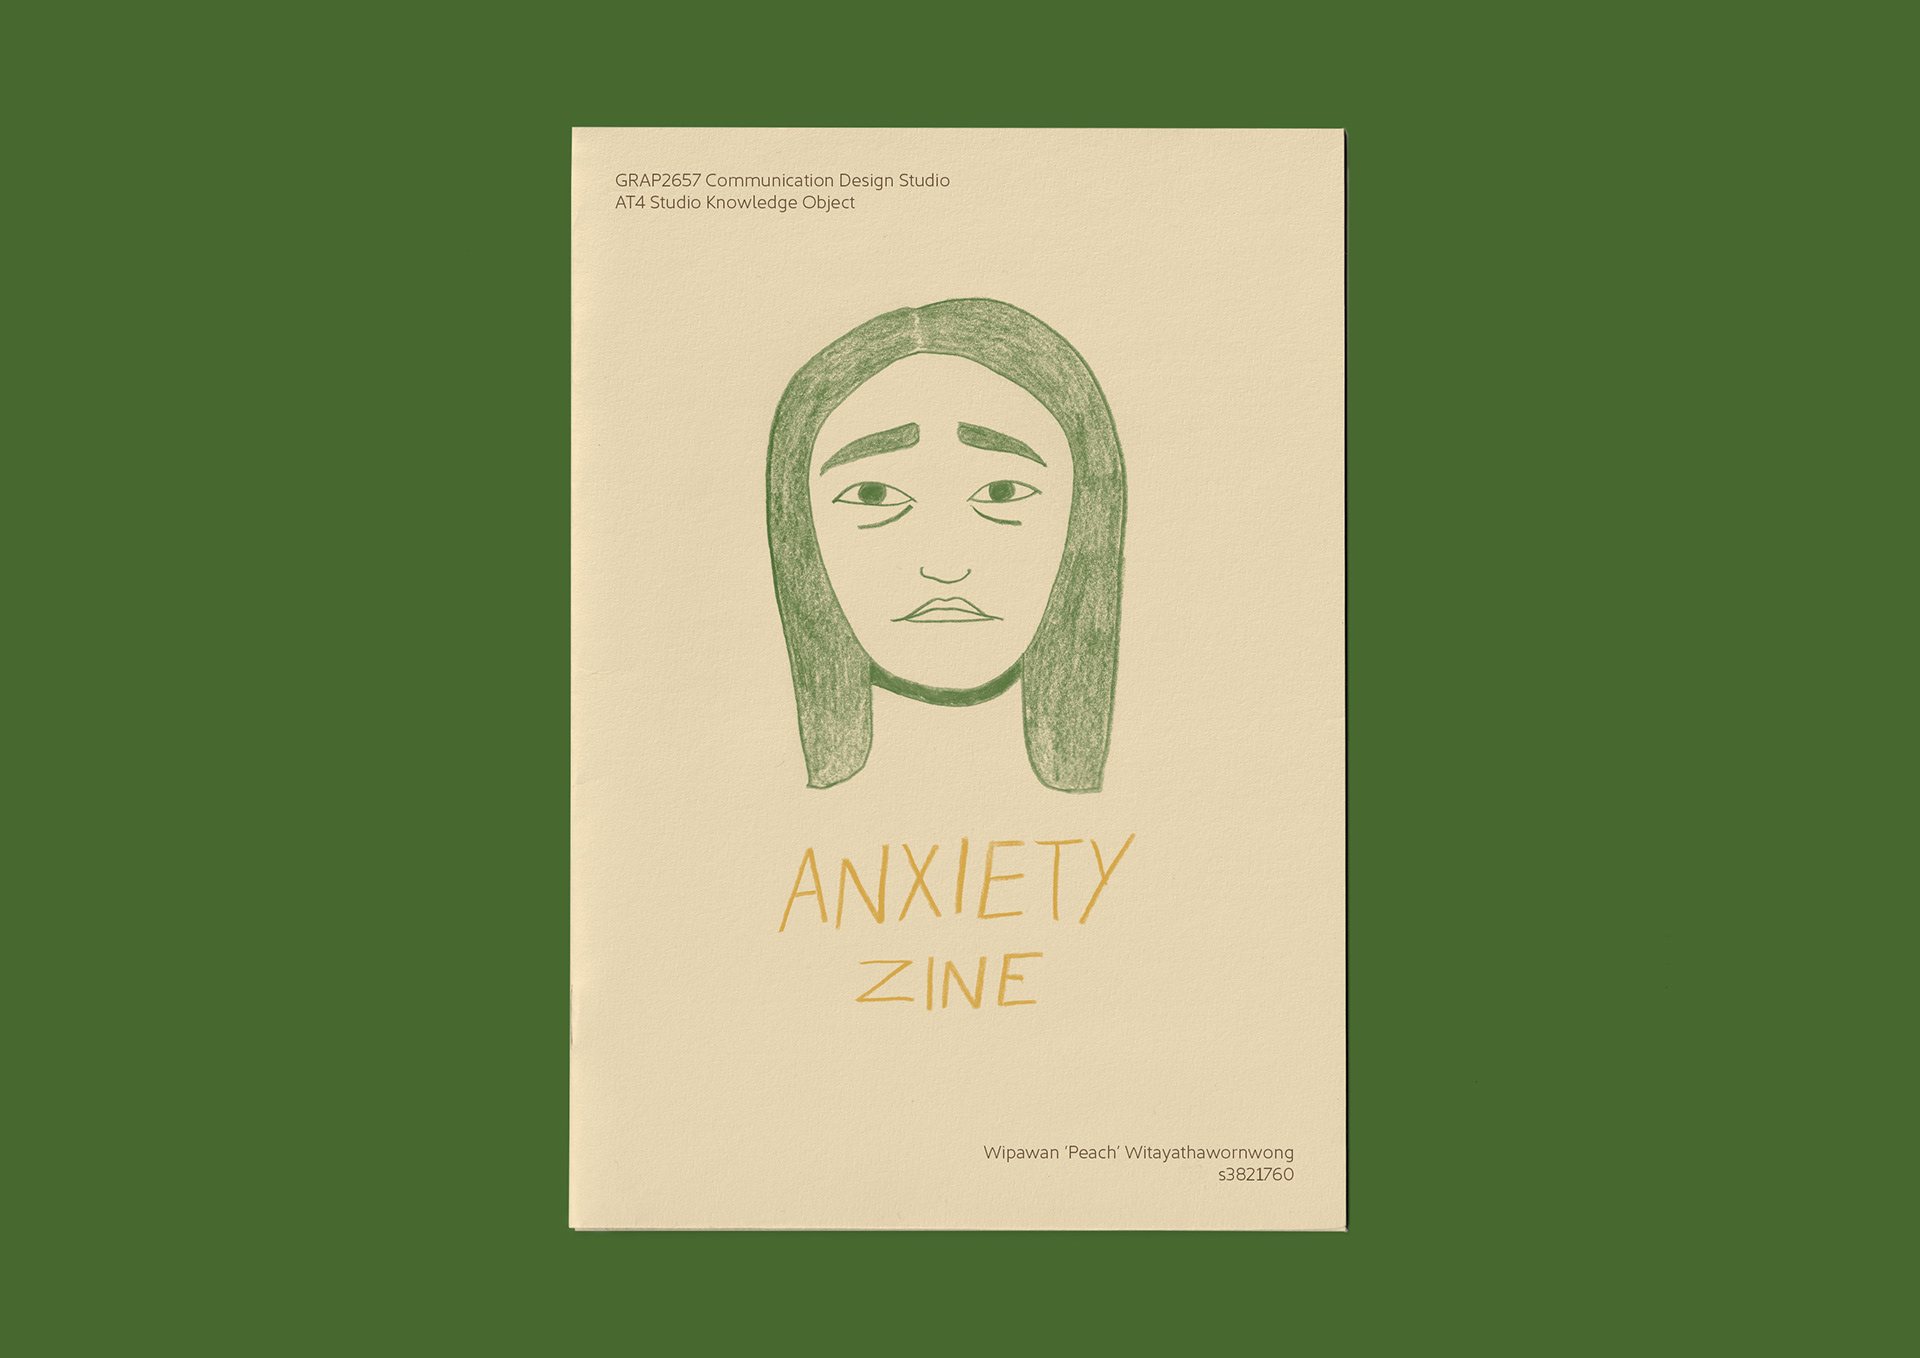 Anxiety Zine